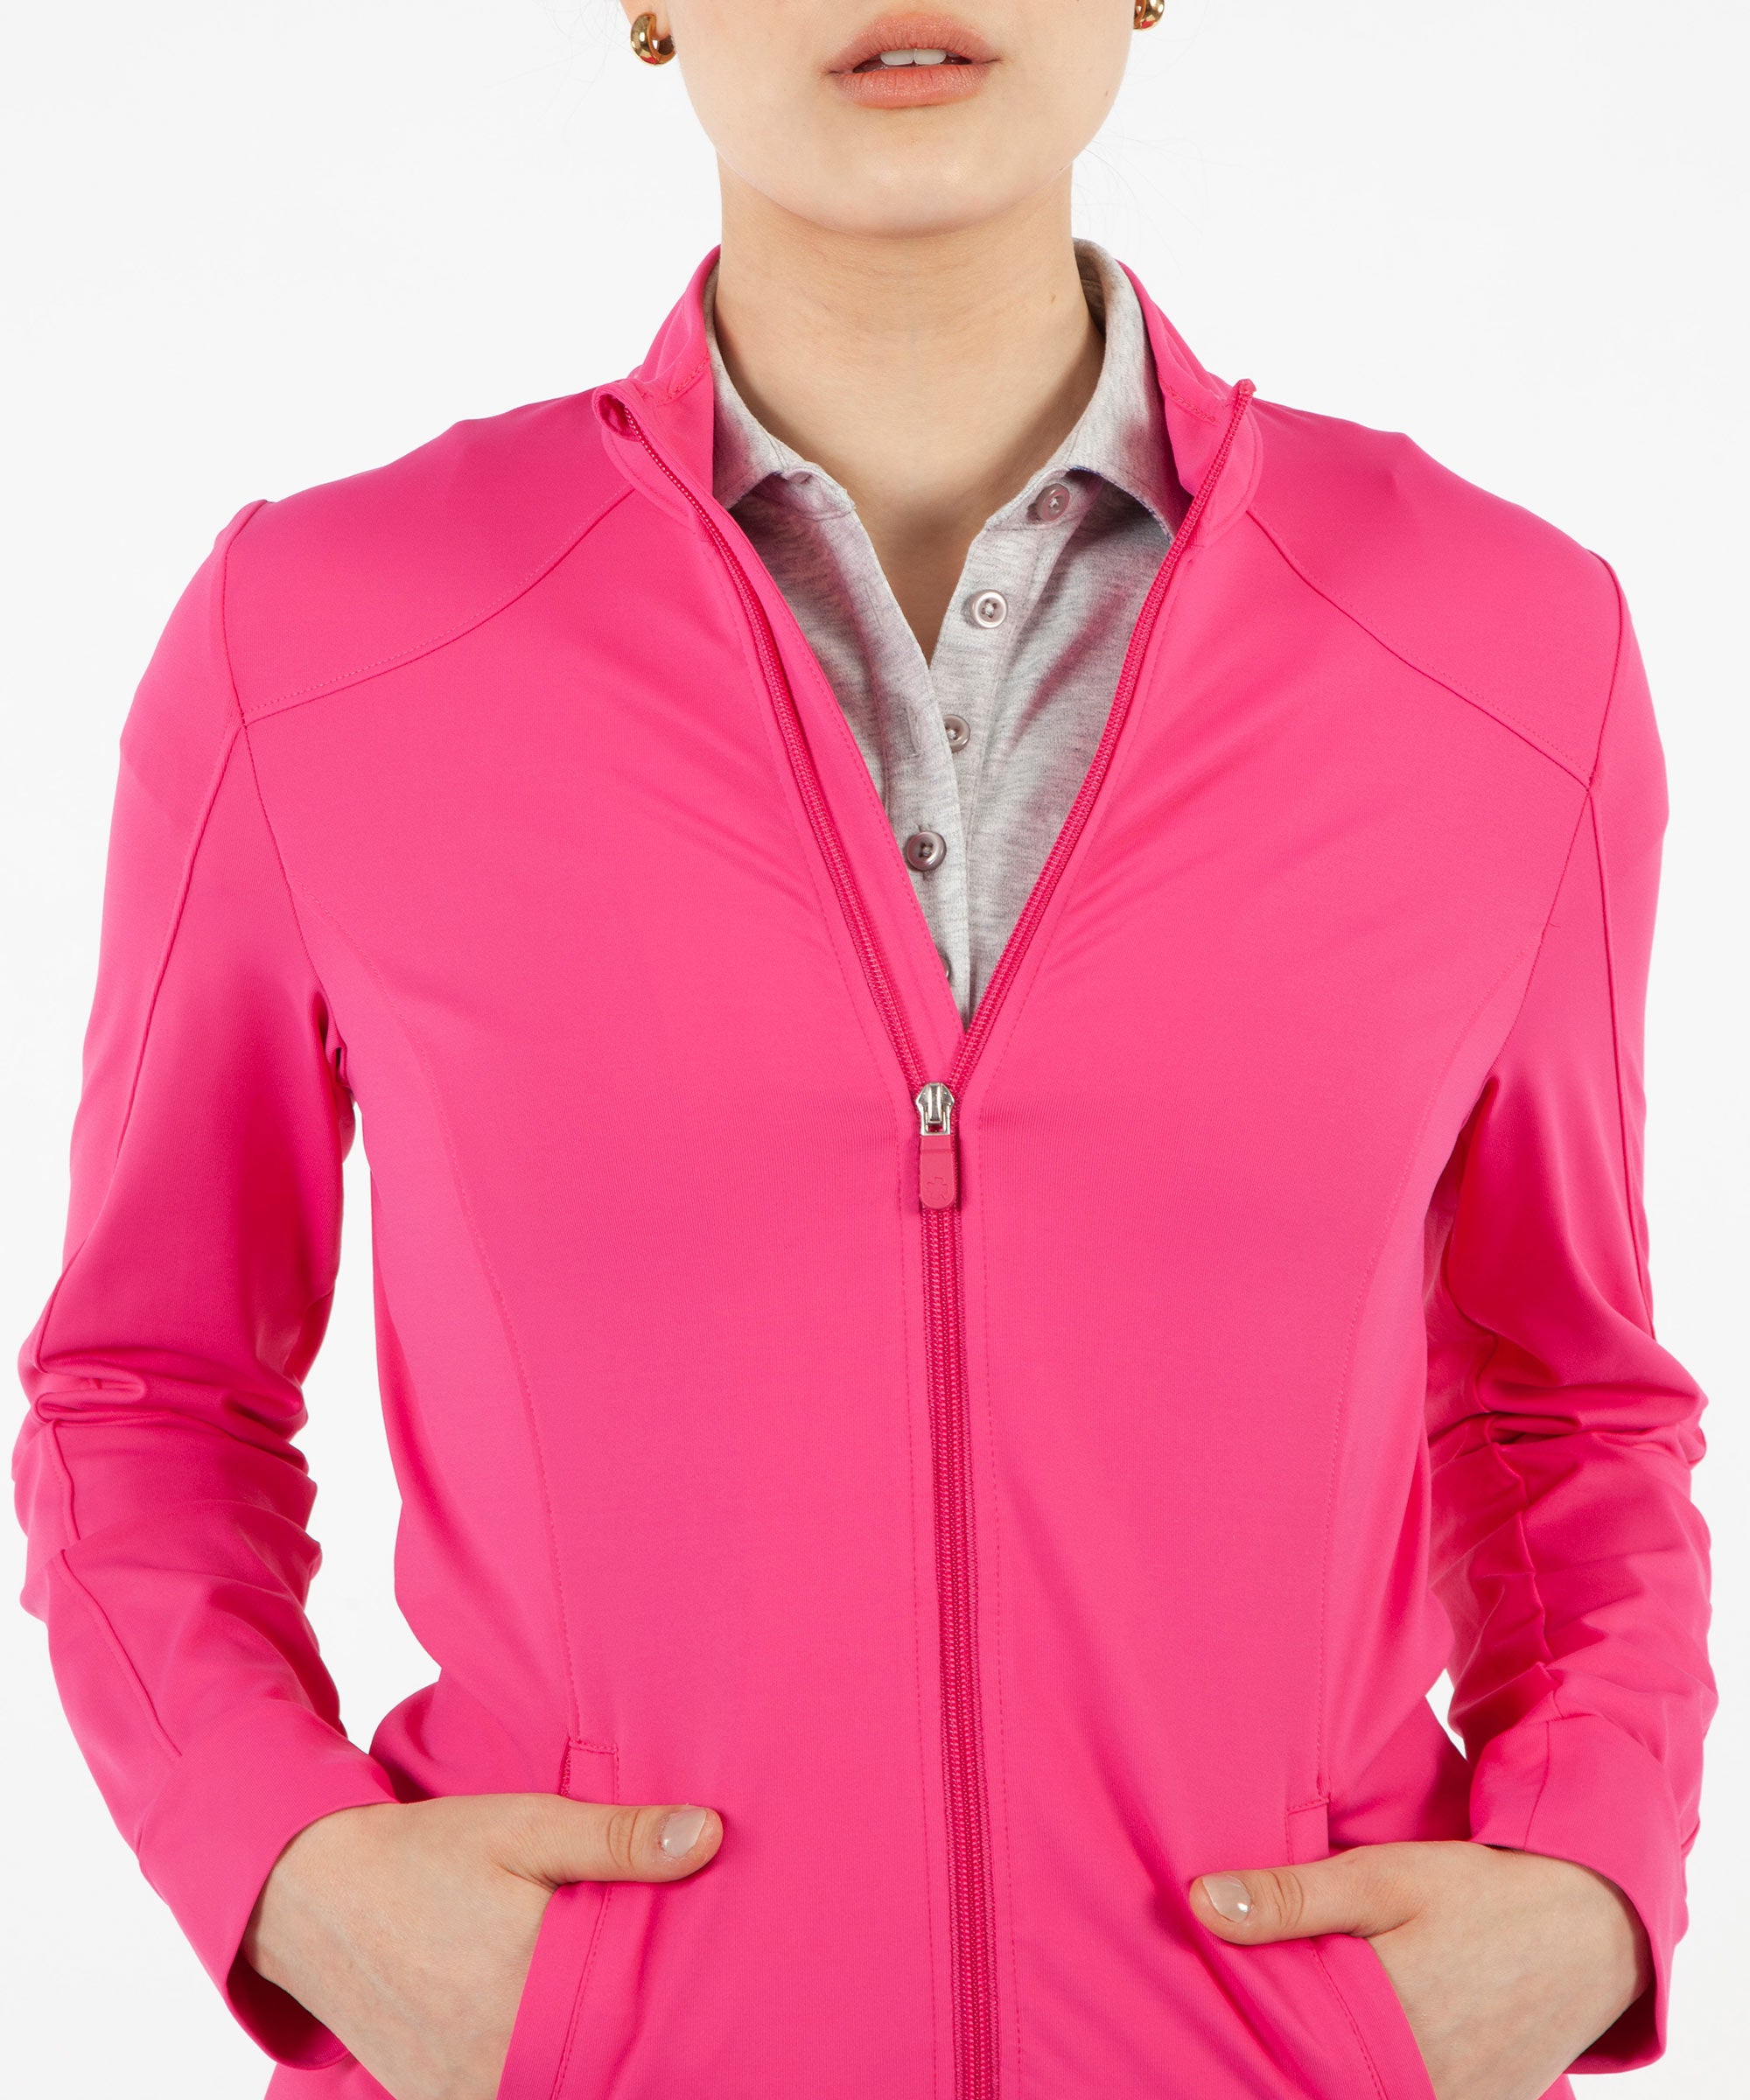 Women's Tech Solid Full-Zip Jacket - Bobby Jones